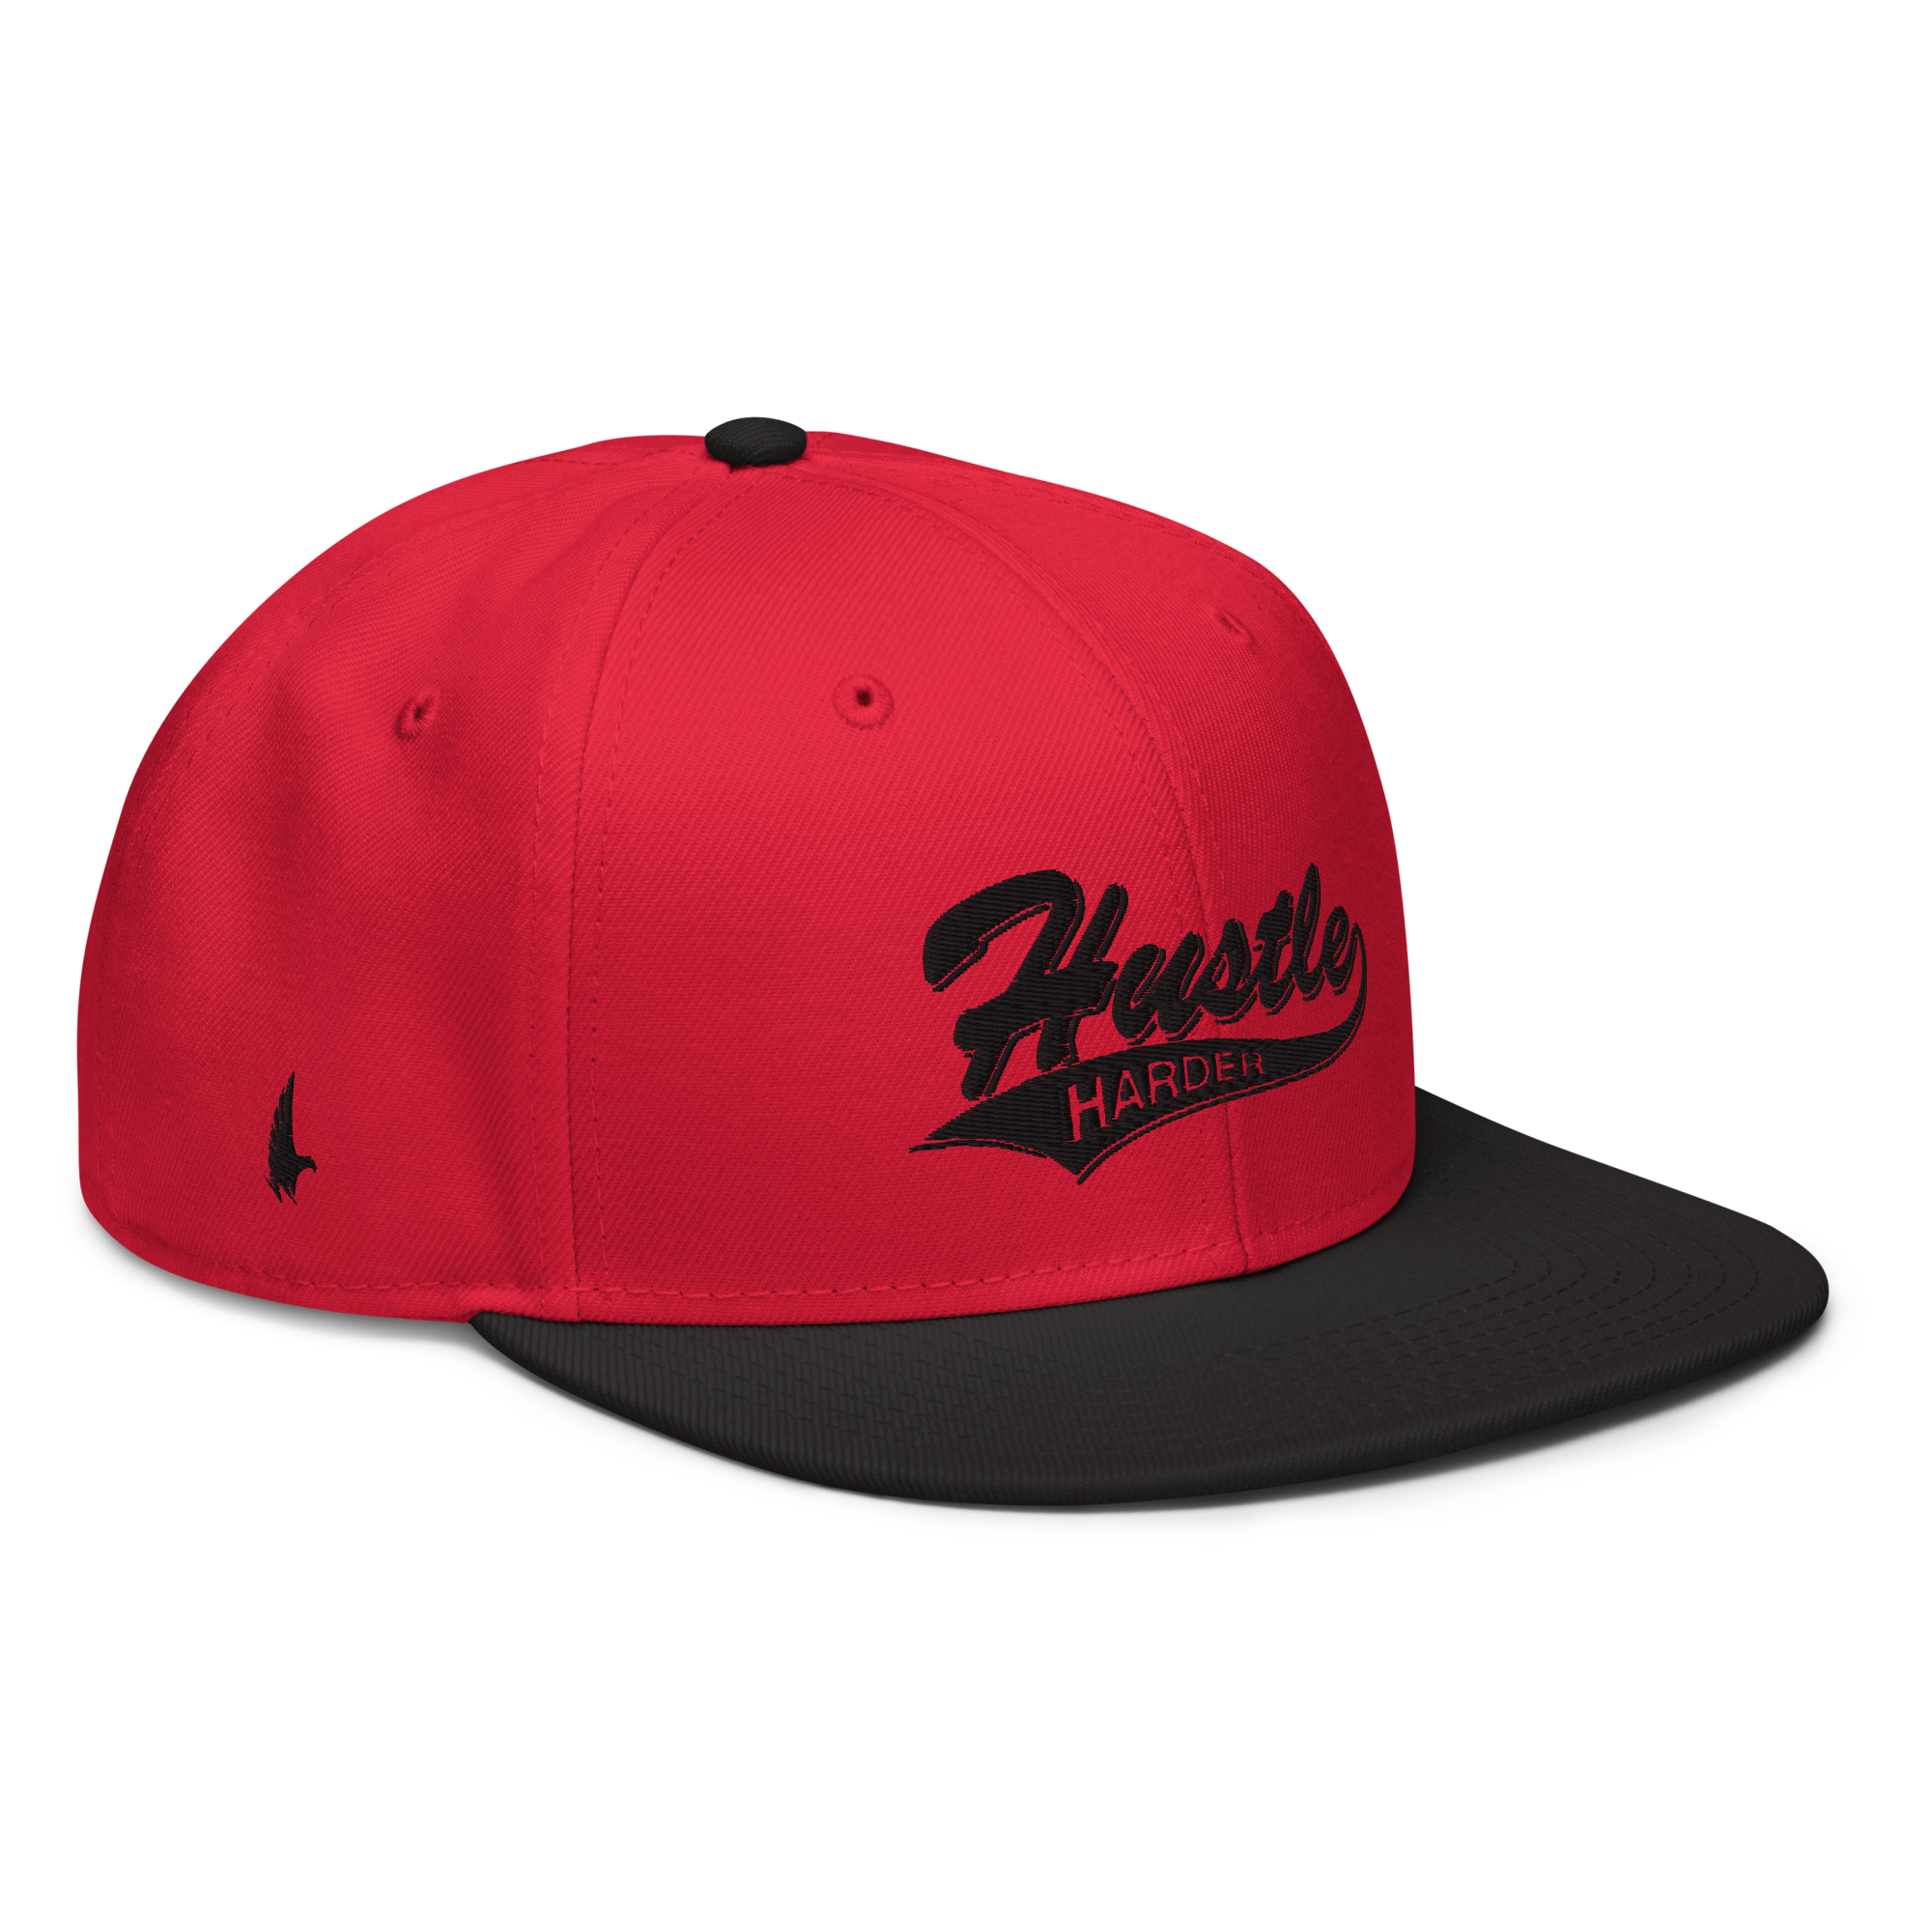 Hustle Harder Snapback Hat Red / Black / Black OS - Loyalty Vibes